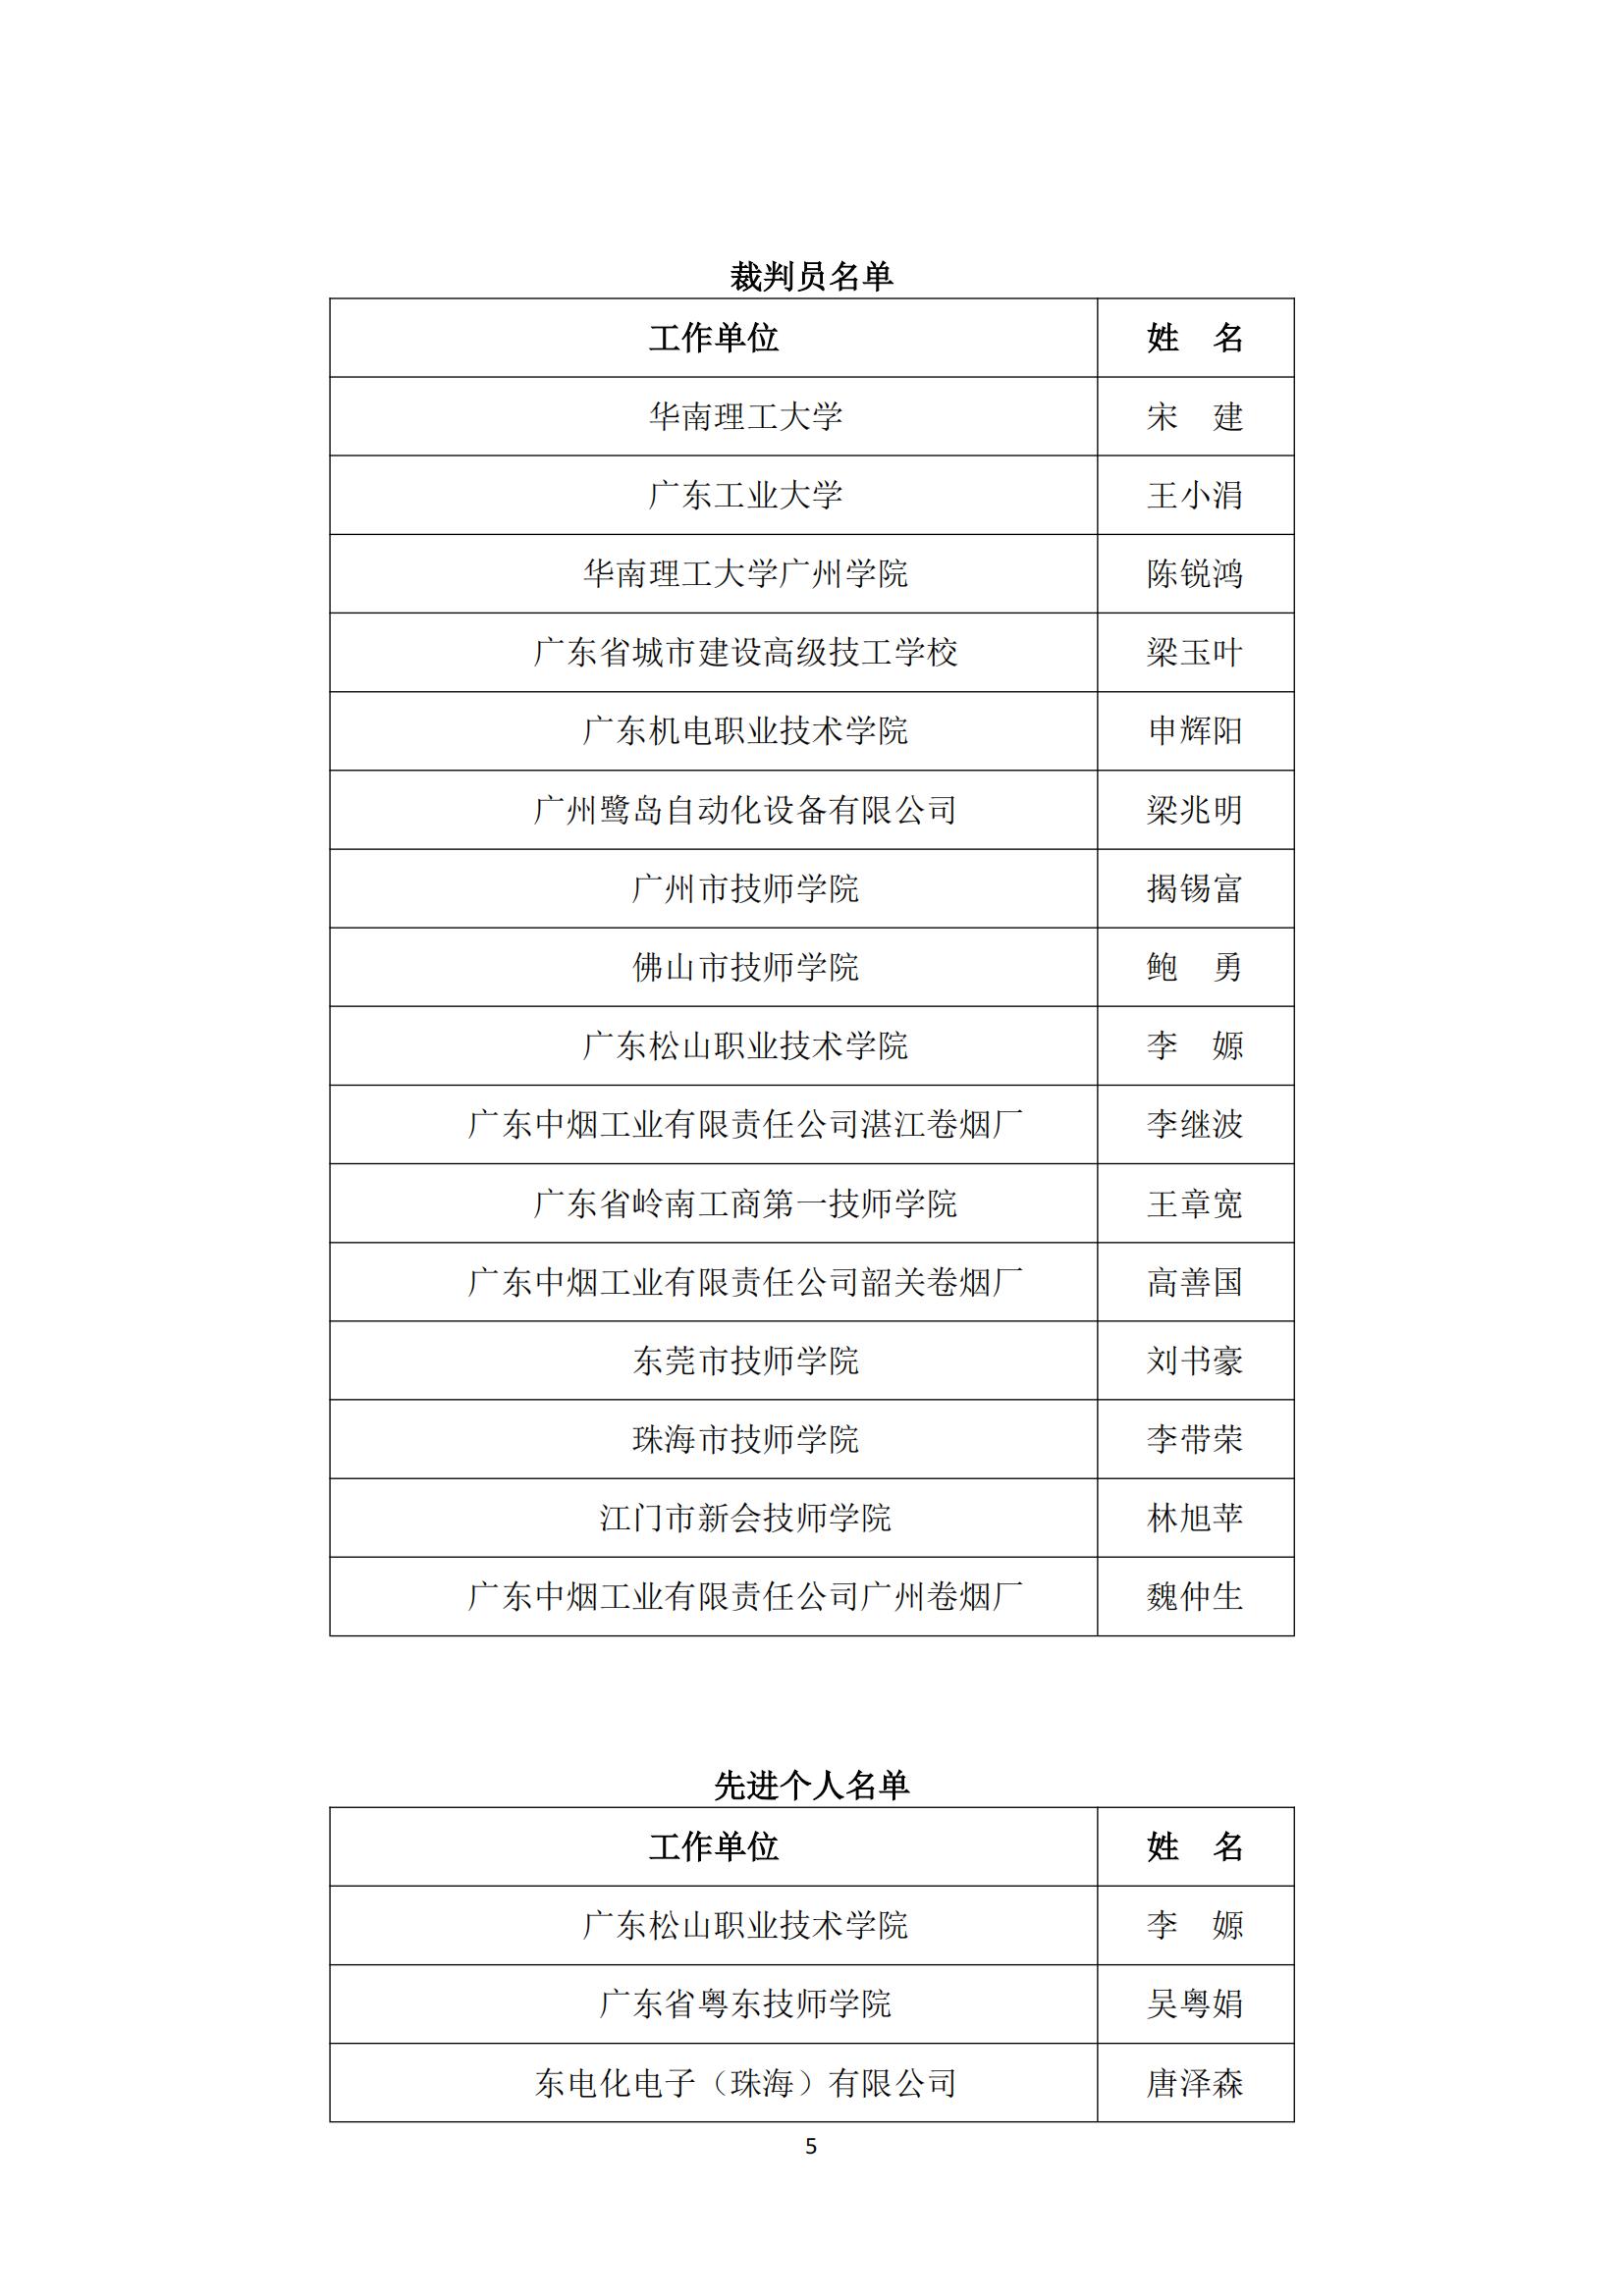 2021年广东省职业技能大赛——机电一体化职业技能竞赛获奖名单公布_04.jpg